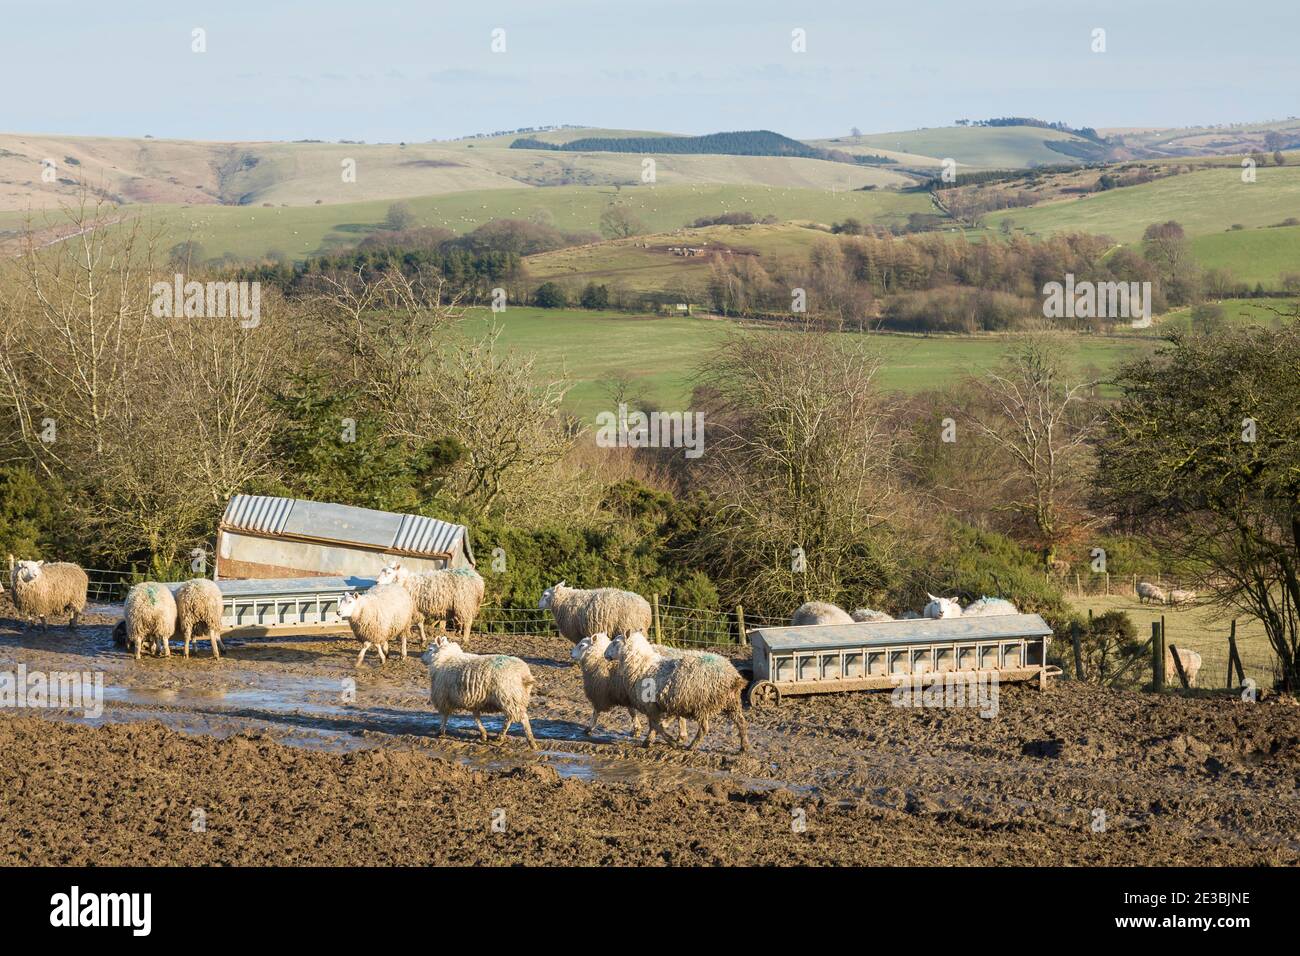 Élevage de moutons sur une ferme britannique dans les collines de Shropshire. Troupeau de moutons dans un champ en paysage anglais Banque D'Images